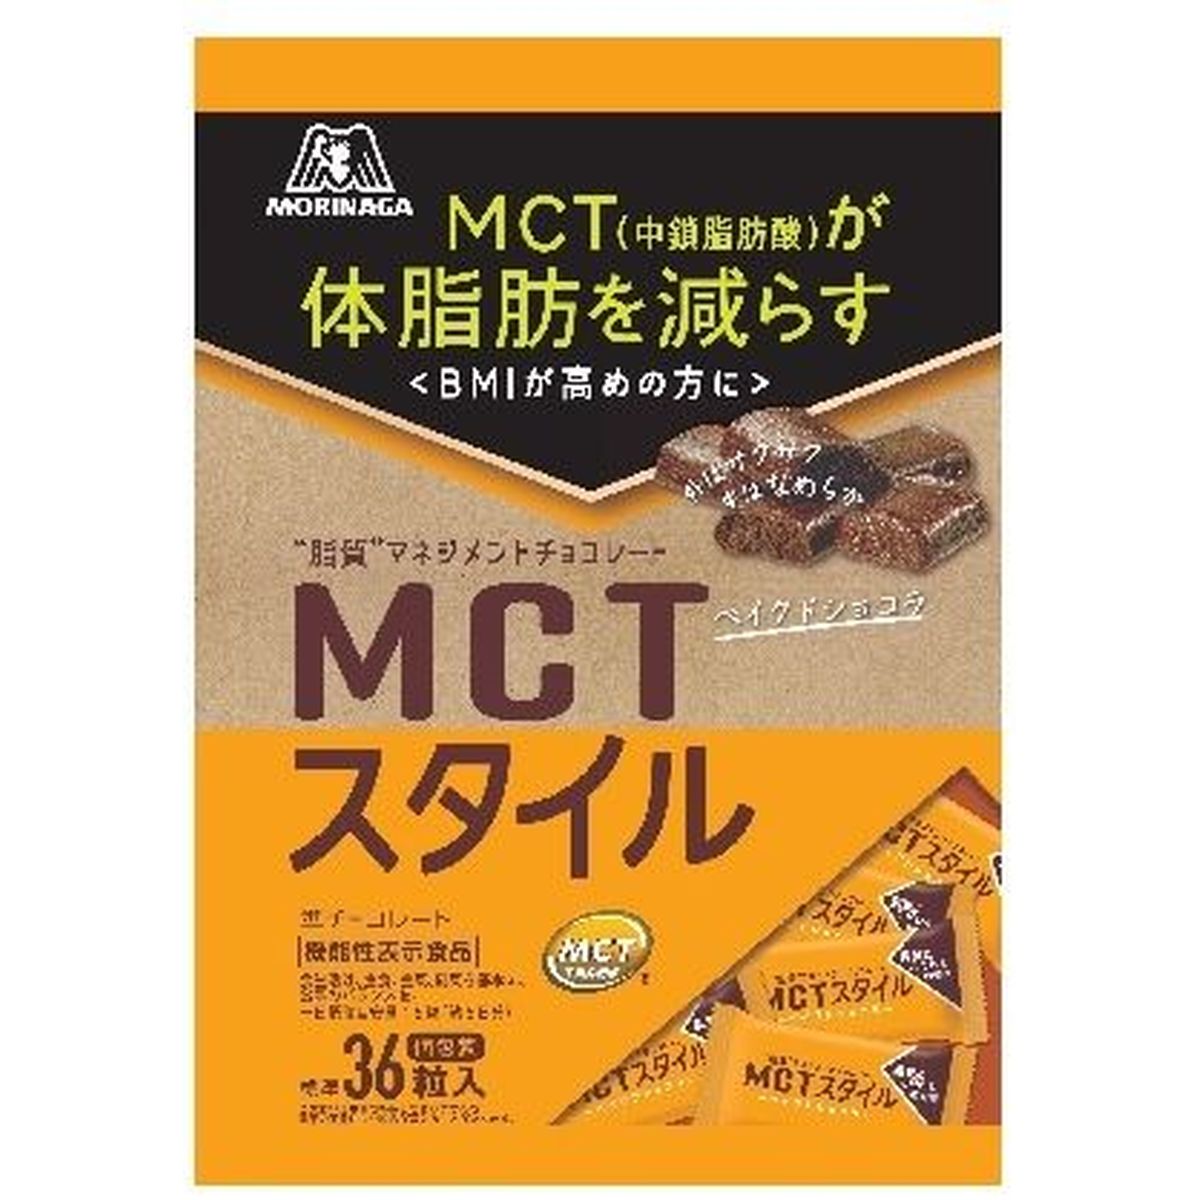 【16個入リ】森永 MCTスタイル ベイクドショコラ 141g